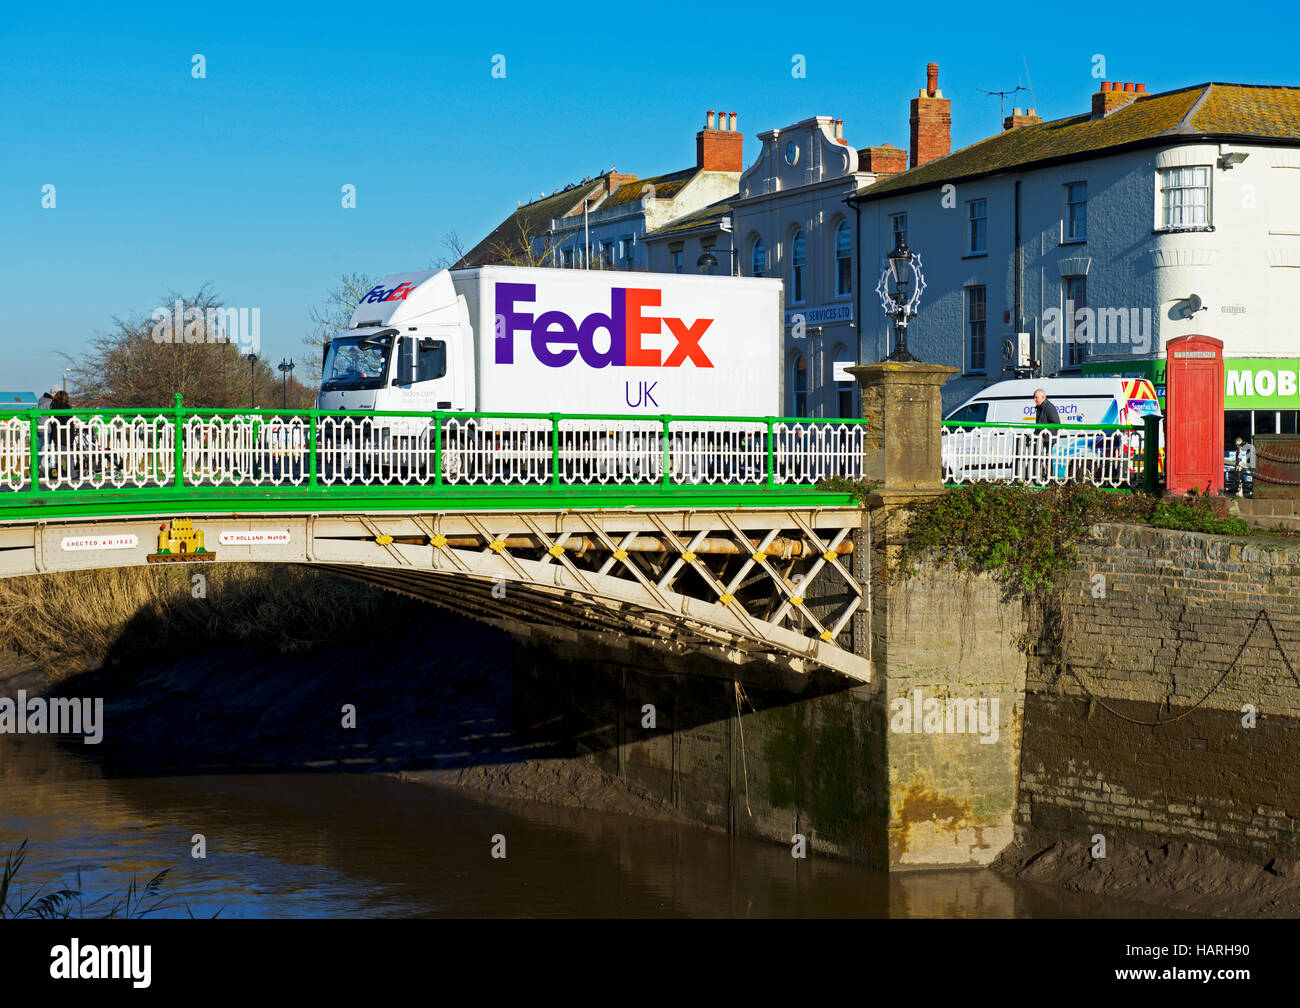 Livraison FedEx van traversant le pont de la rivière Parrett, Bridgwater, Somerset, England UK Banque D'Images